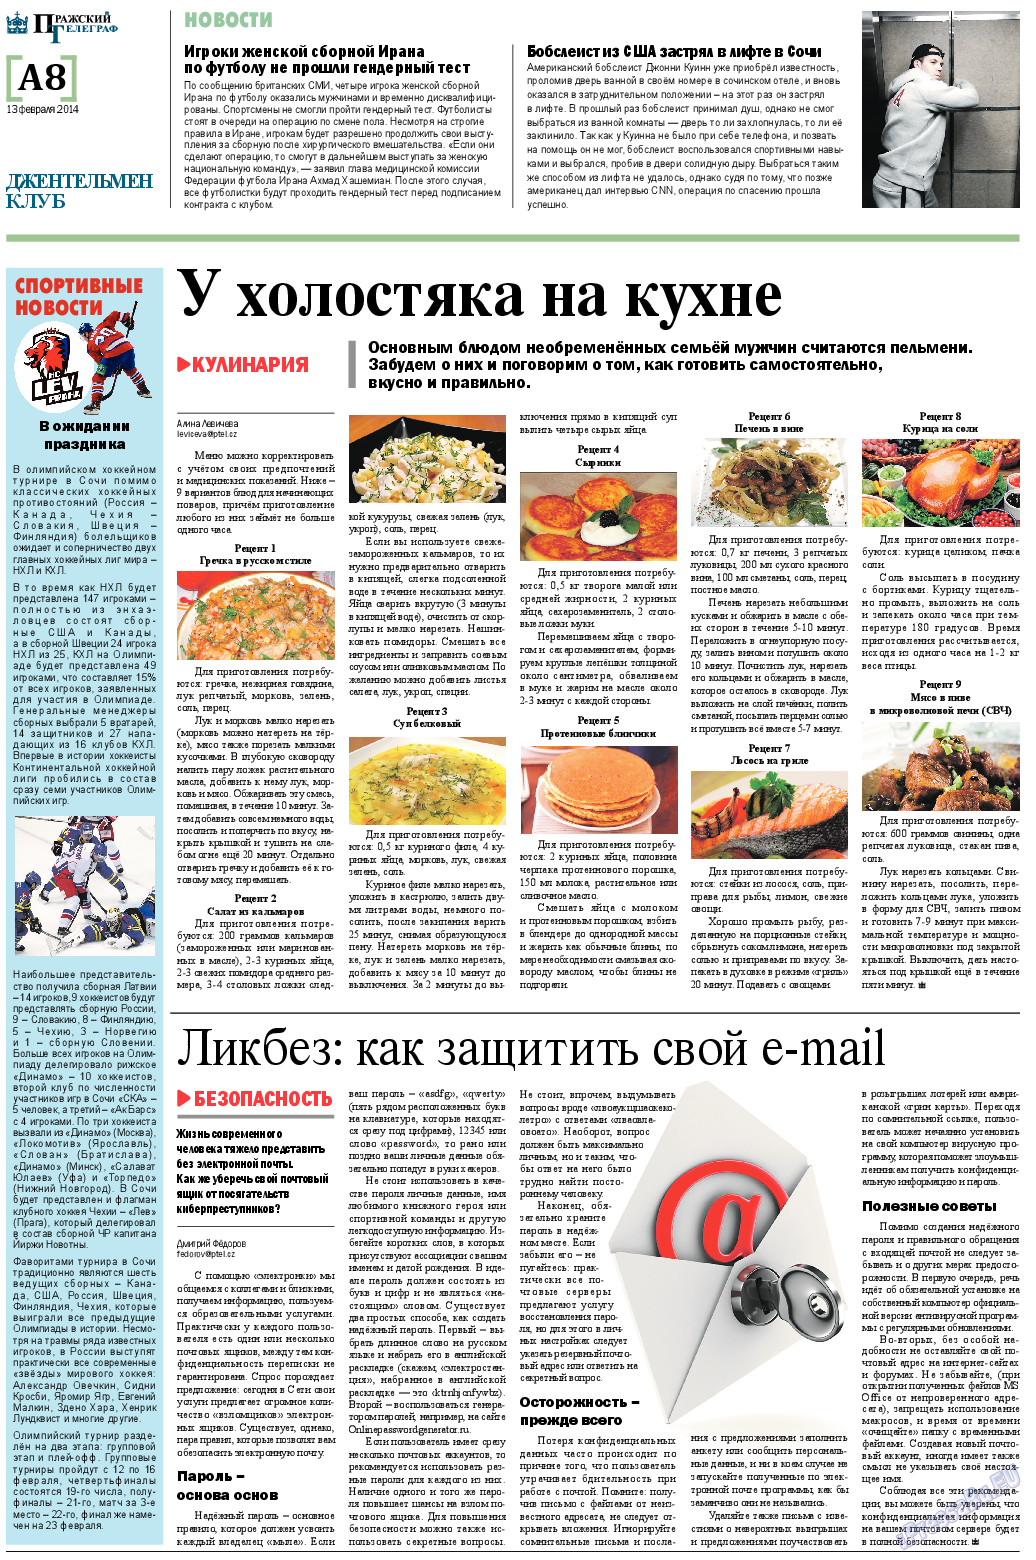 Пражский телеграф (газета). 2014 год, номер 7, стр. 8